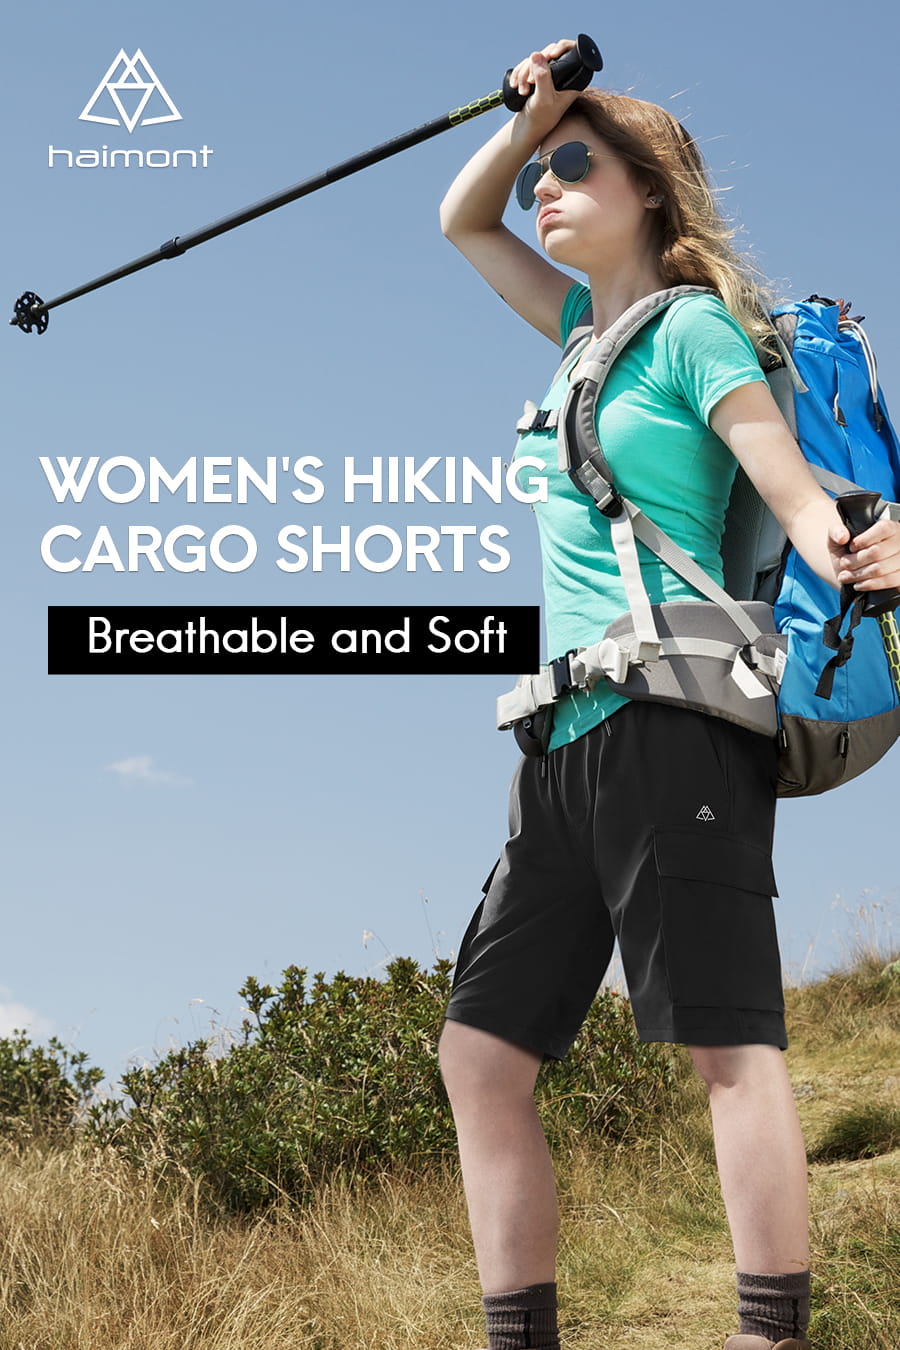 women hiking shorts